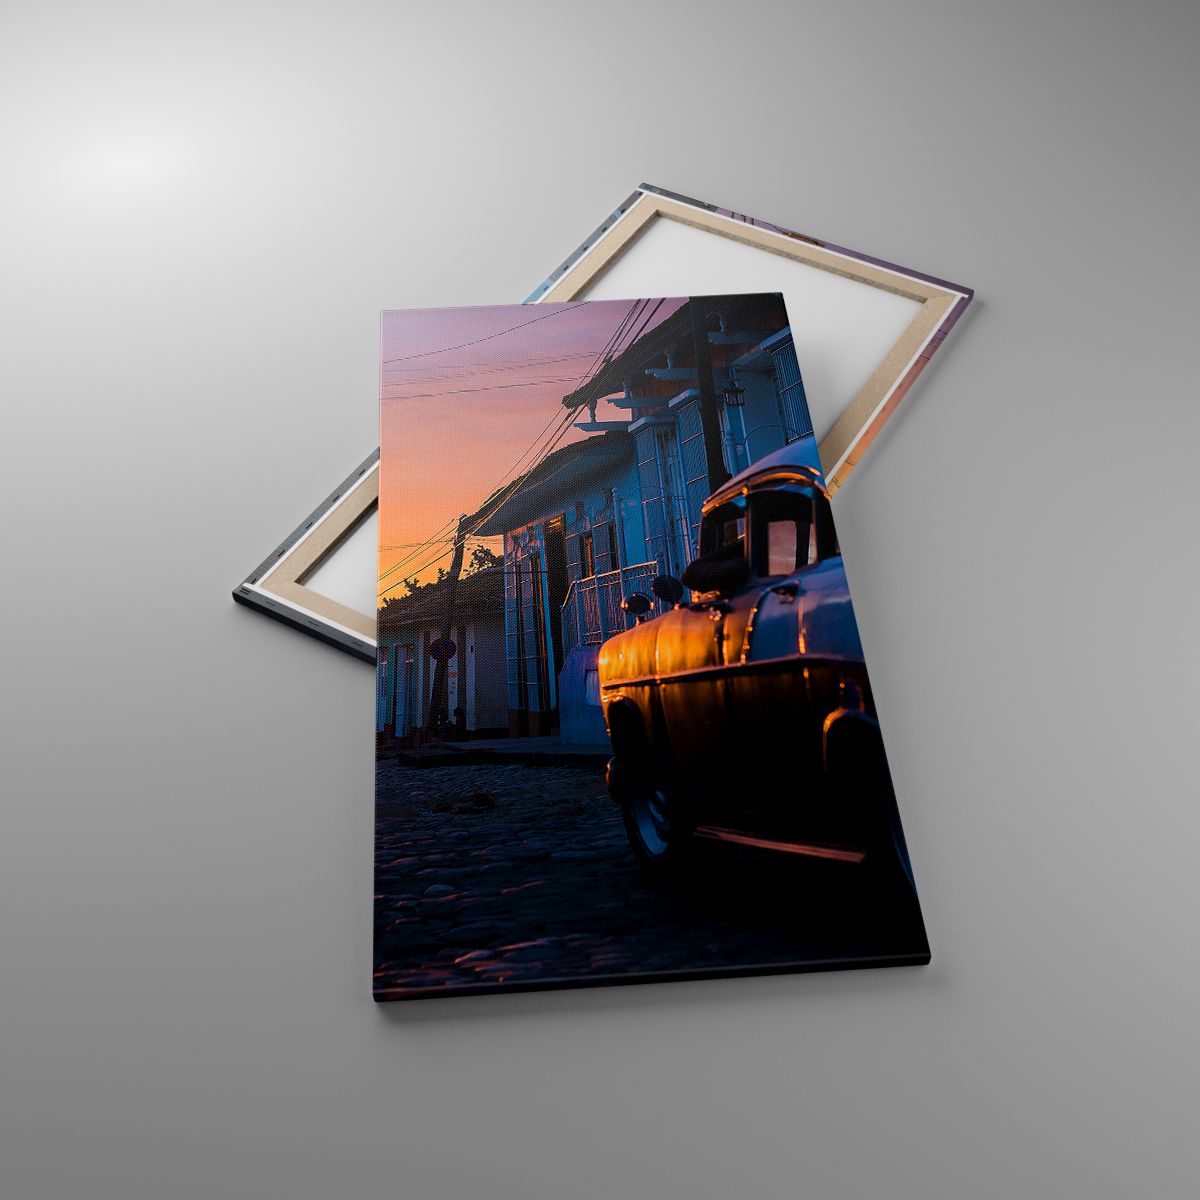 Leinwandbild Retro-Auto, Leinwandbild Die Architektur, Leinwandbild Kuba, Leinwandbild Reisen, Leinwandbild Der Sonnenuntergang